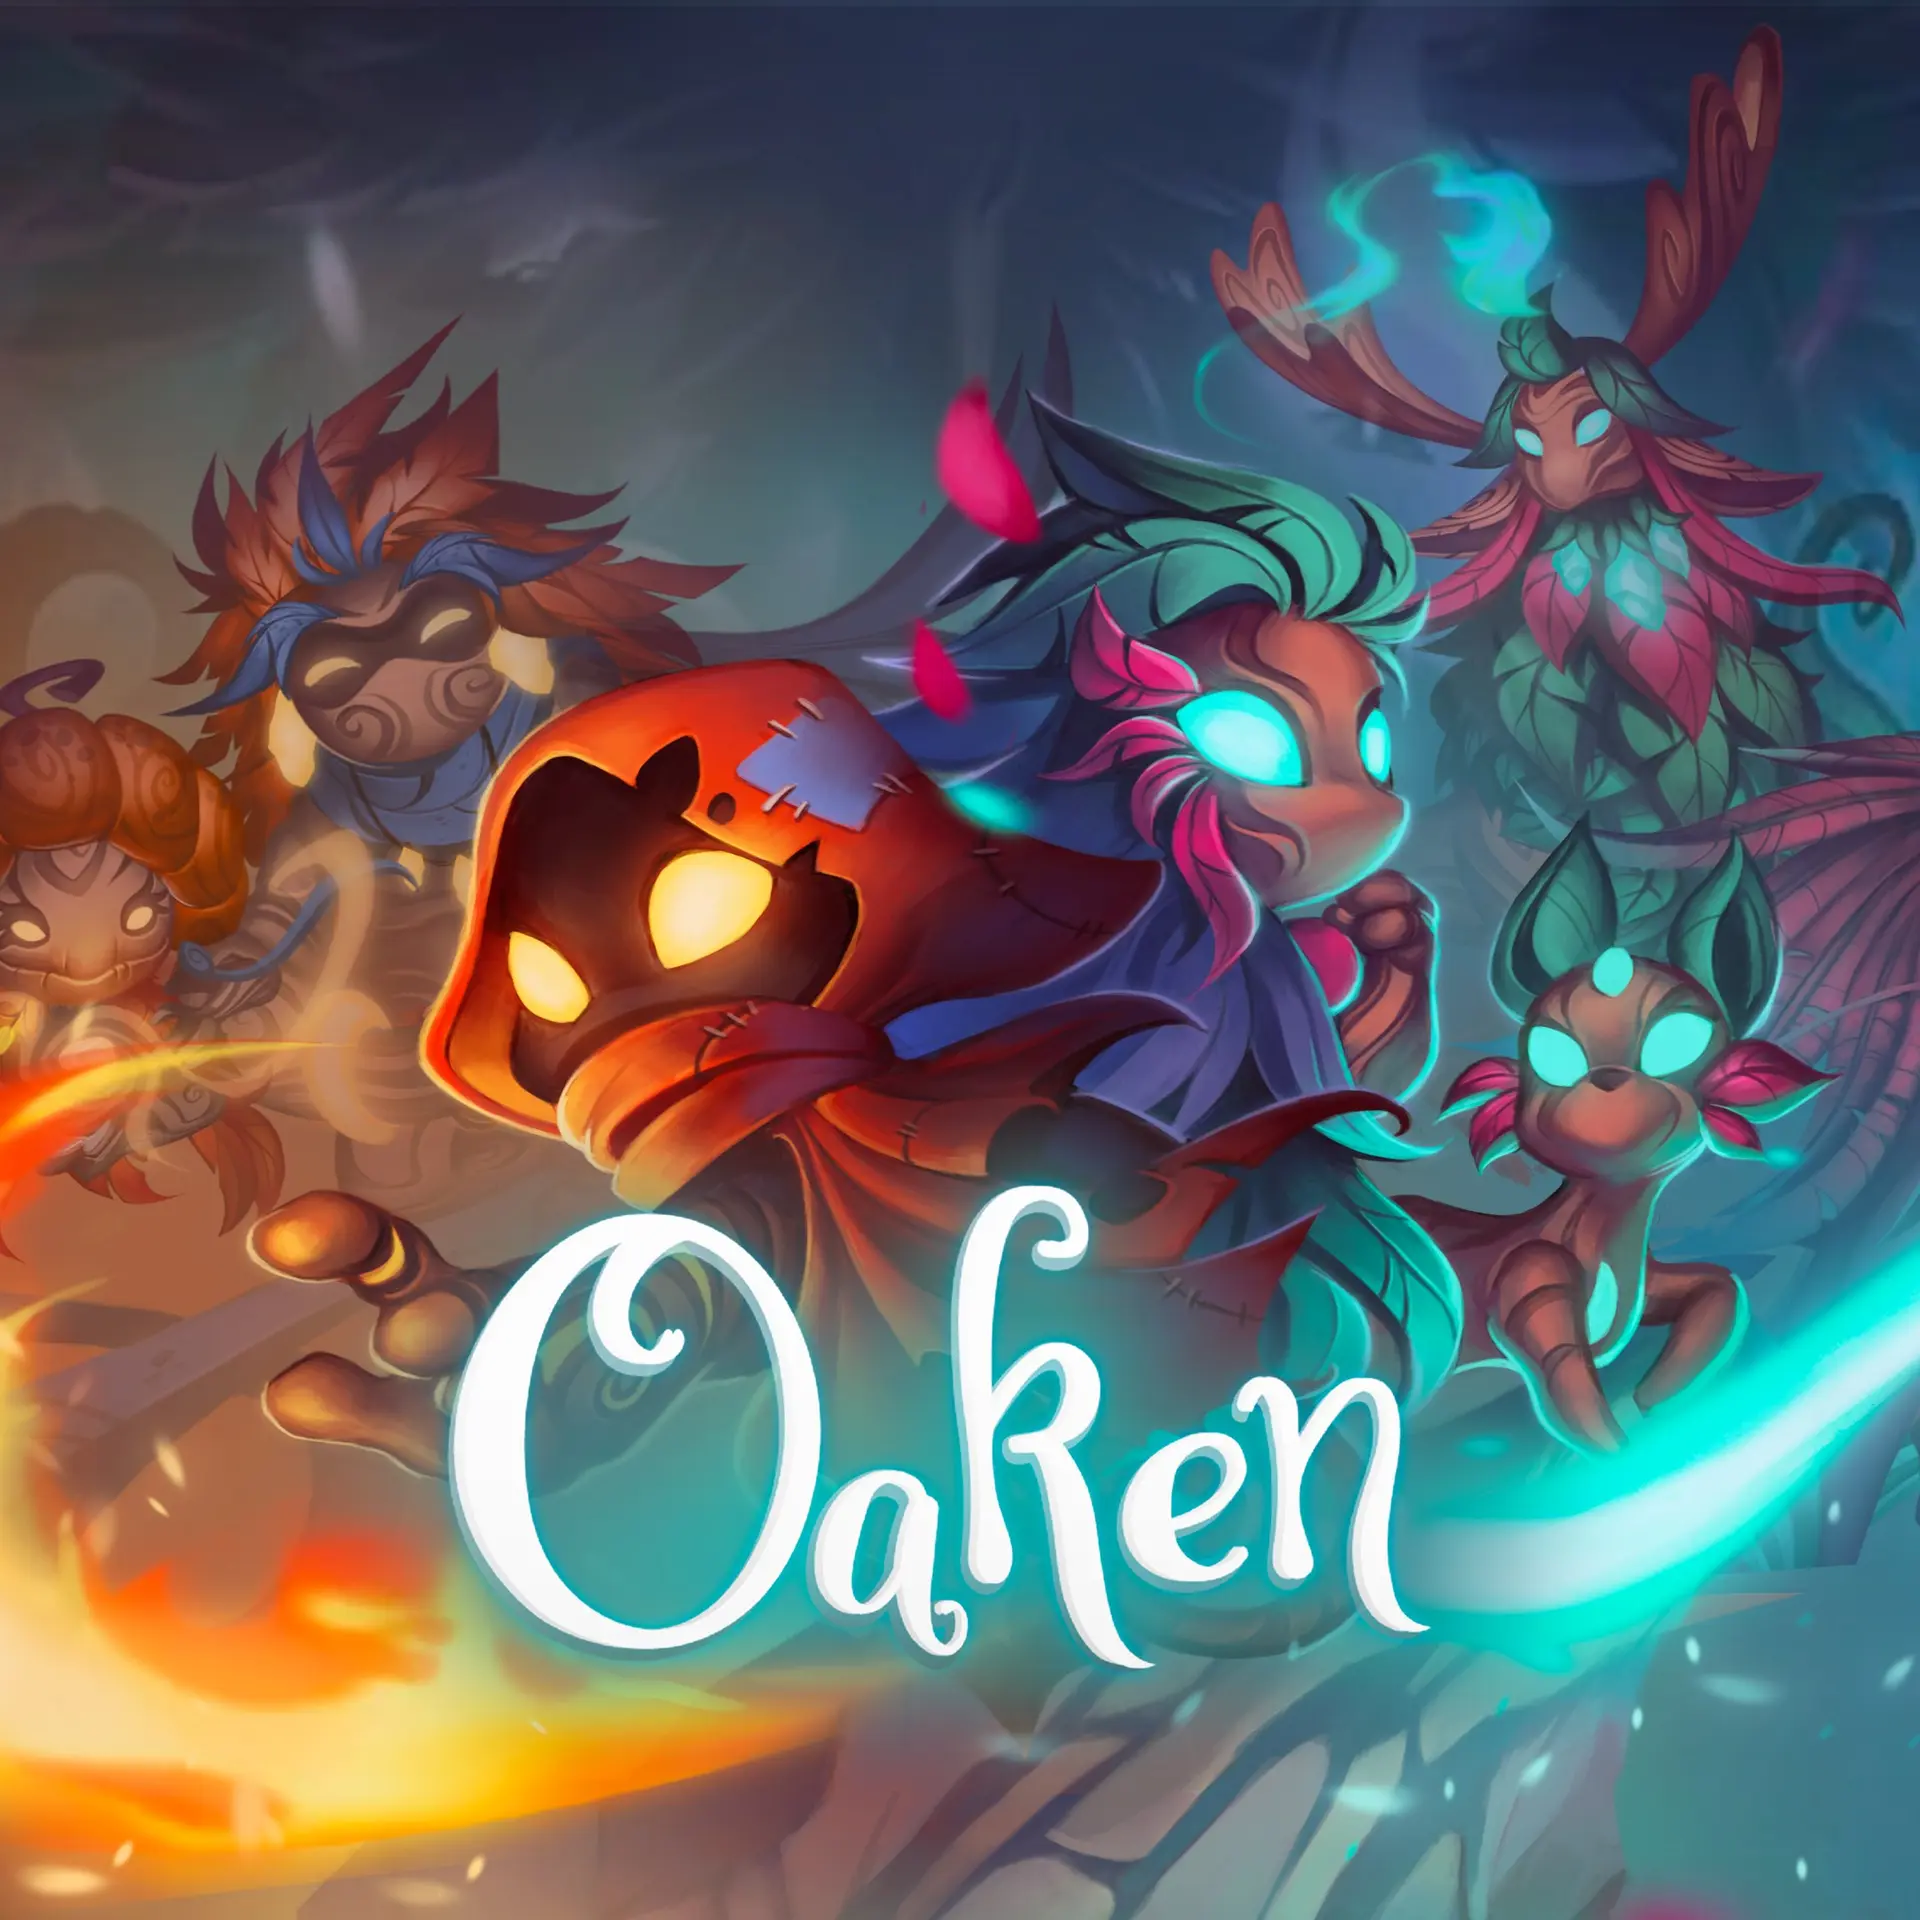 Oaken (Xbox Games BR)